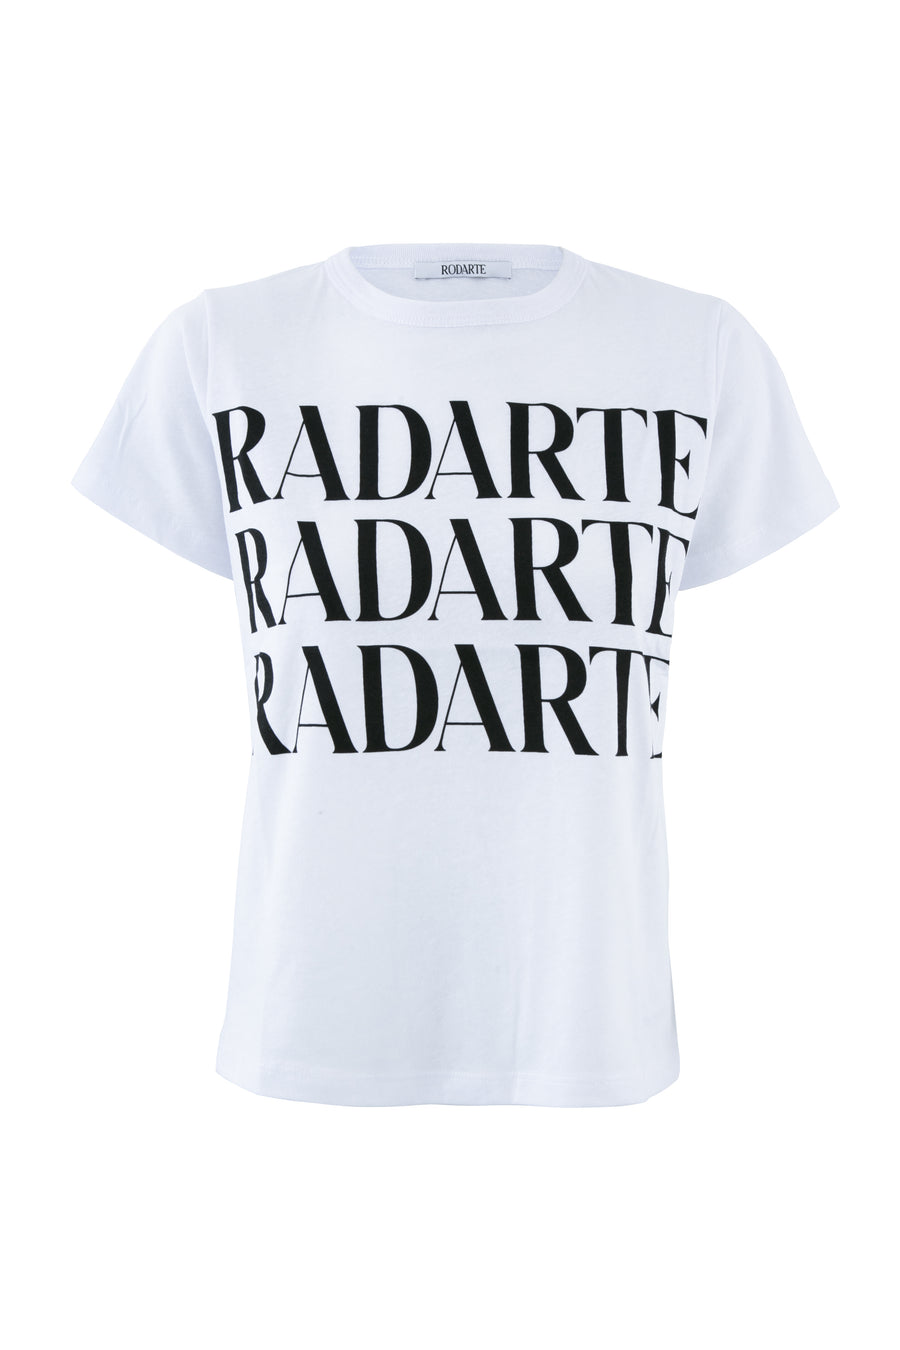 Block Font Radarte T-Shirt